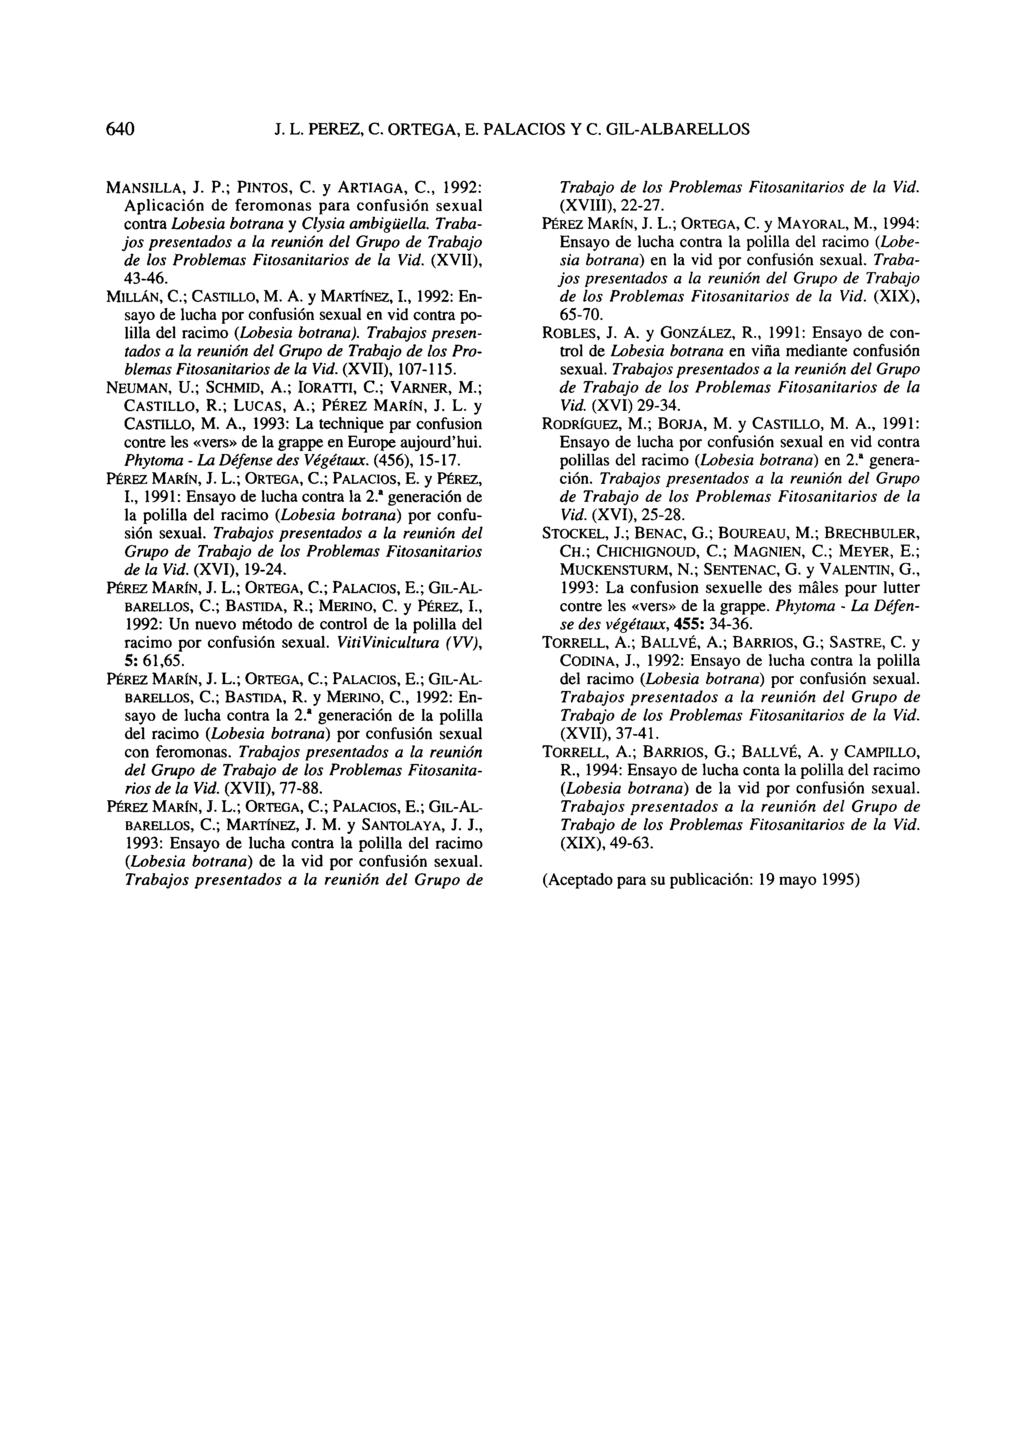 MANSILLA, J. P.; PINTOS, C. y ARTIAGA, C, 1992: Aplicación de feromonas para confusión sexual contra Lobesia botrana y Clysia ambigüella.